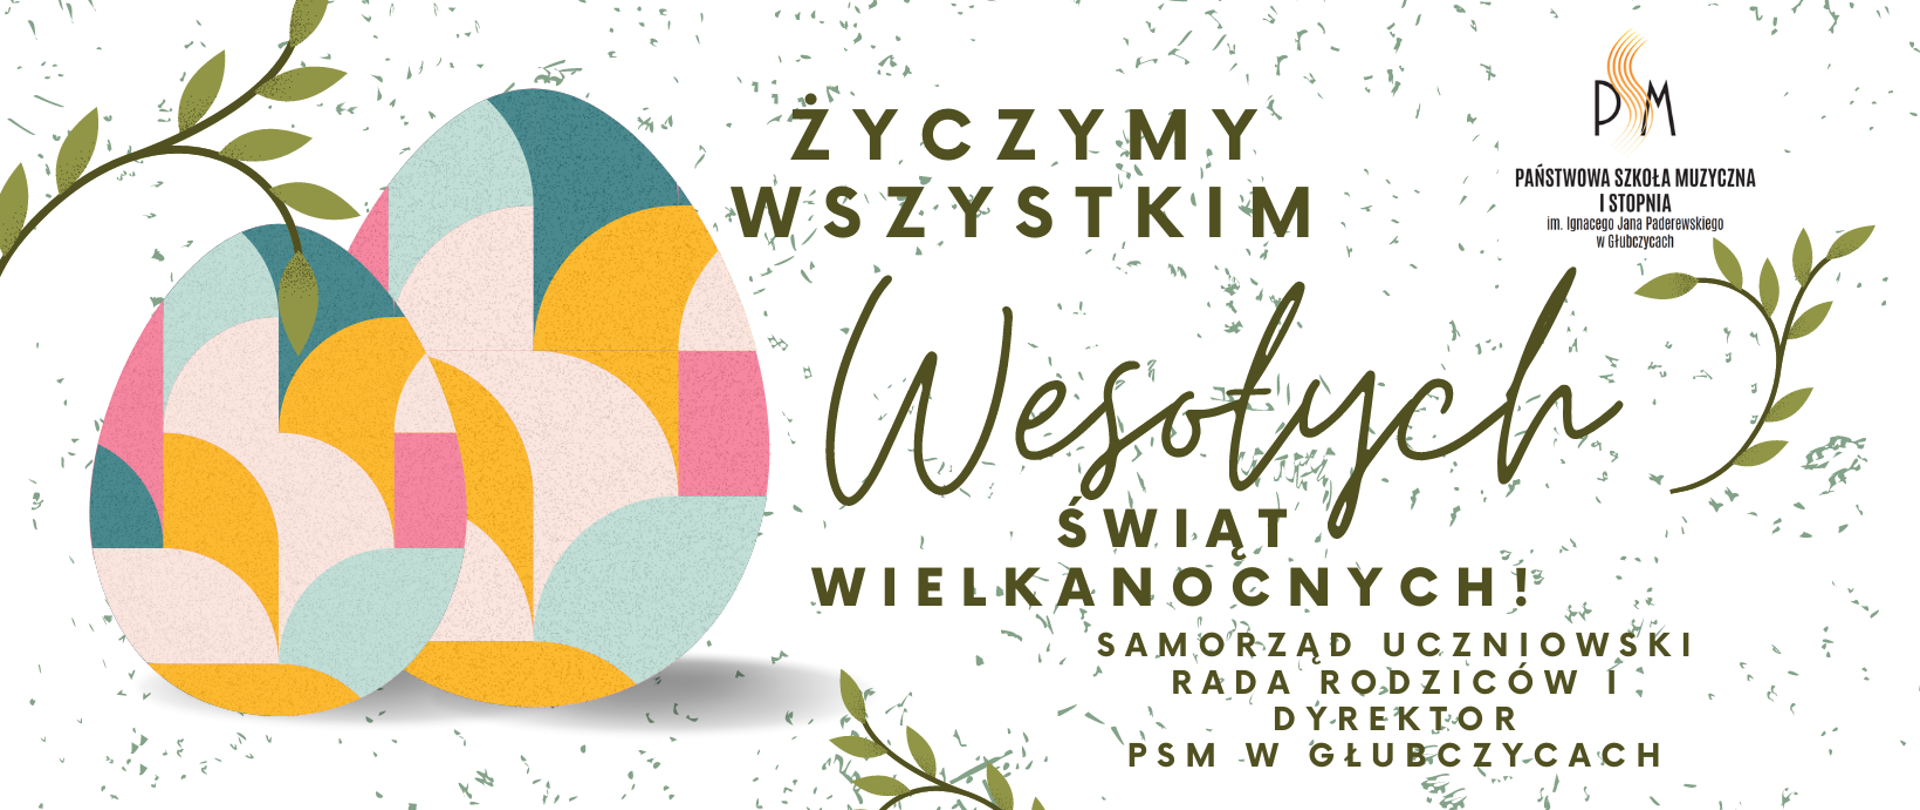 Baner z grafiką na jasnym tle i napisem: Życzymy wszystkim wesołych Świąt Wielkanocnych! Samorząd Uczniowski, Rada Rodziców i Dyrektor PSM w
Głubczycach.